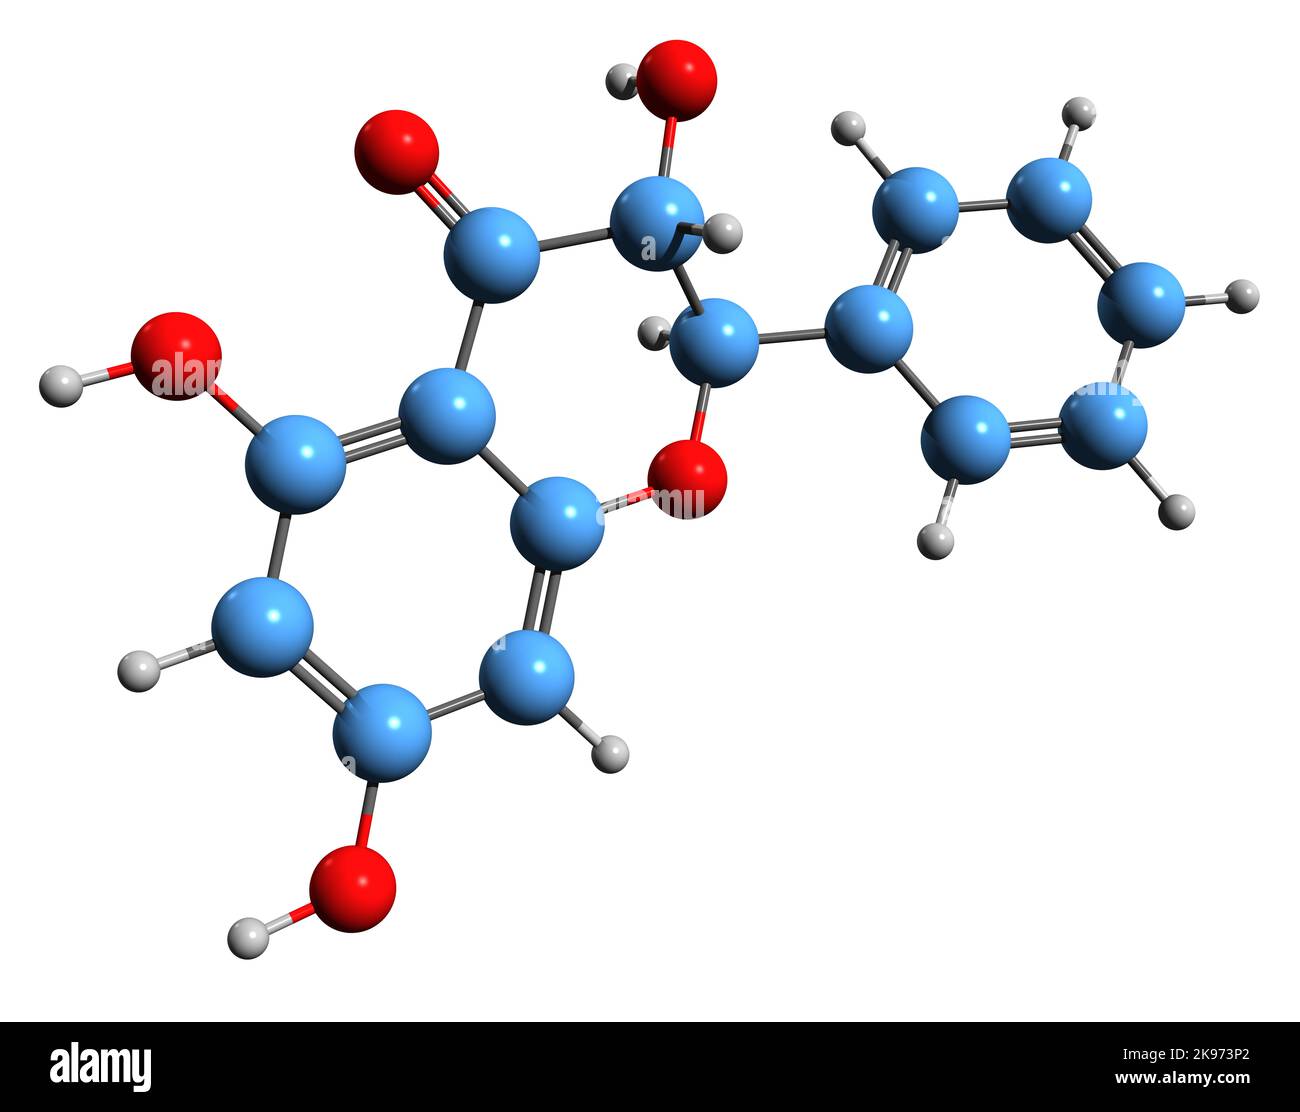 3D Bild der Skelettformel von Pinobanksin - molekulare chemische Struktur des antioxidativen Bioflavonoids, isoliert auf weißem Hintergrund Stockfoto